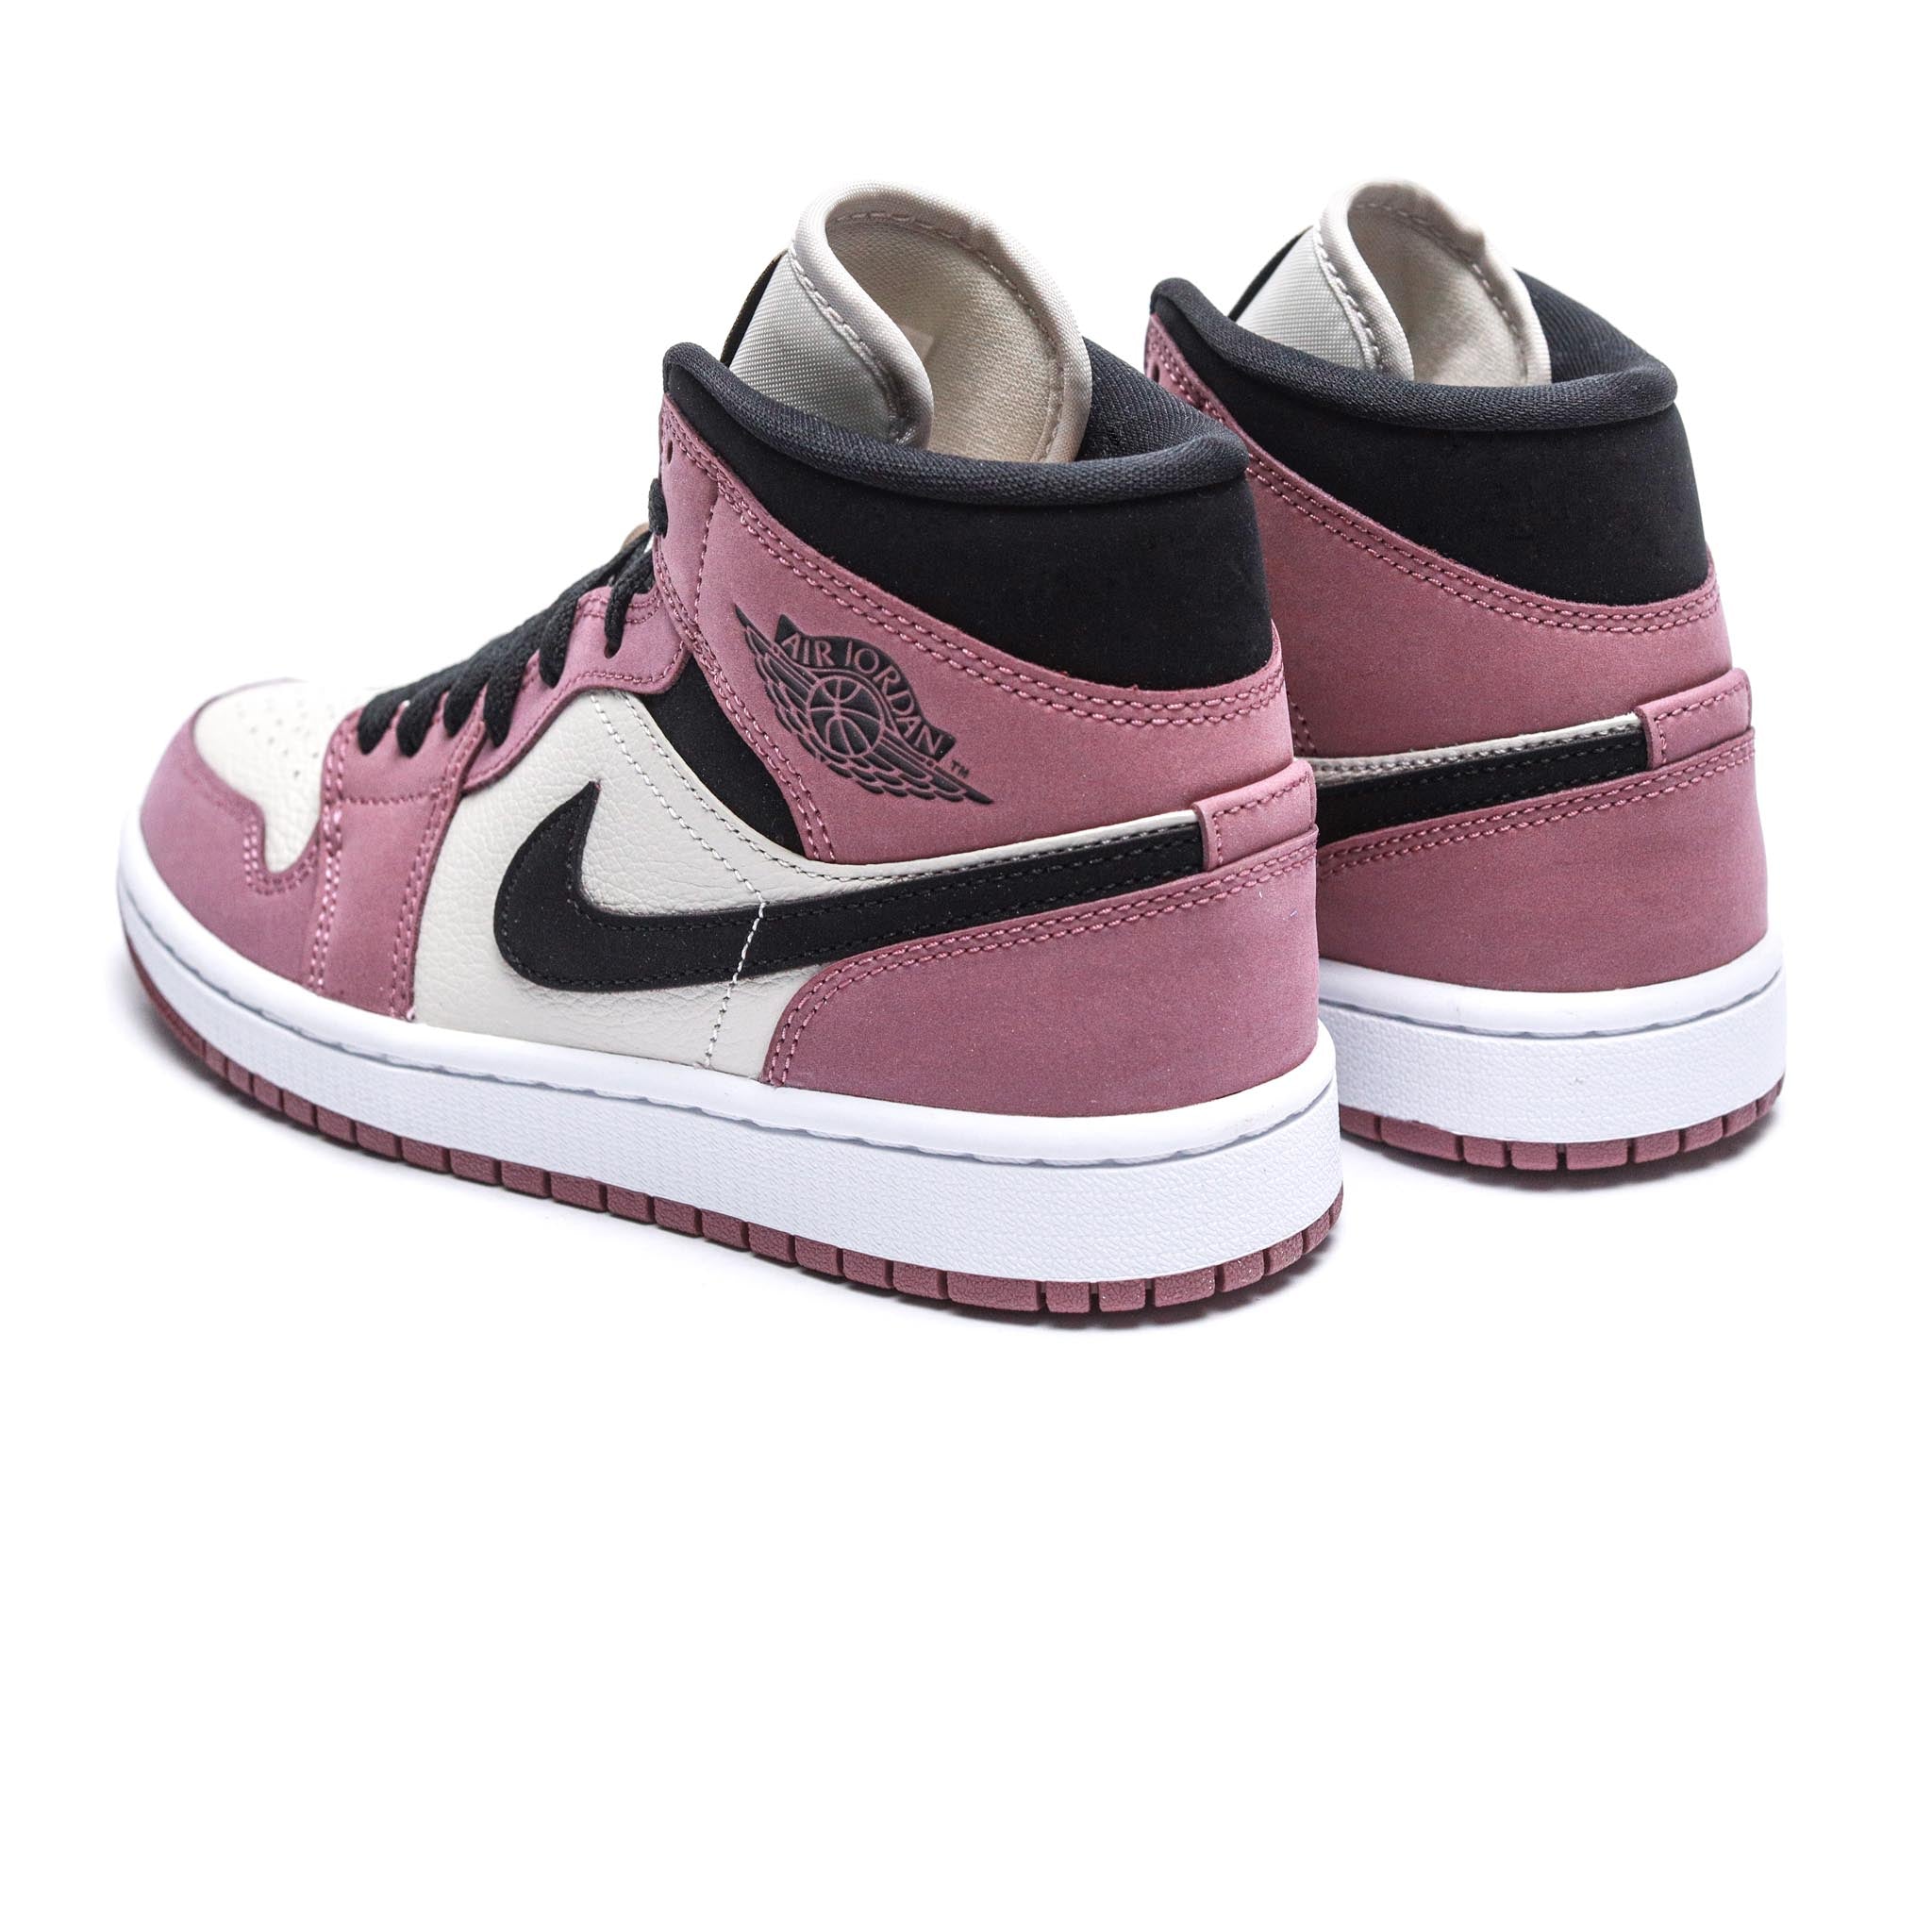 Air Jordan 1 Mid SE ‘Berry Pink’